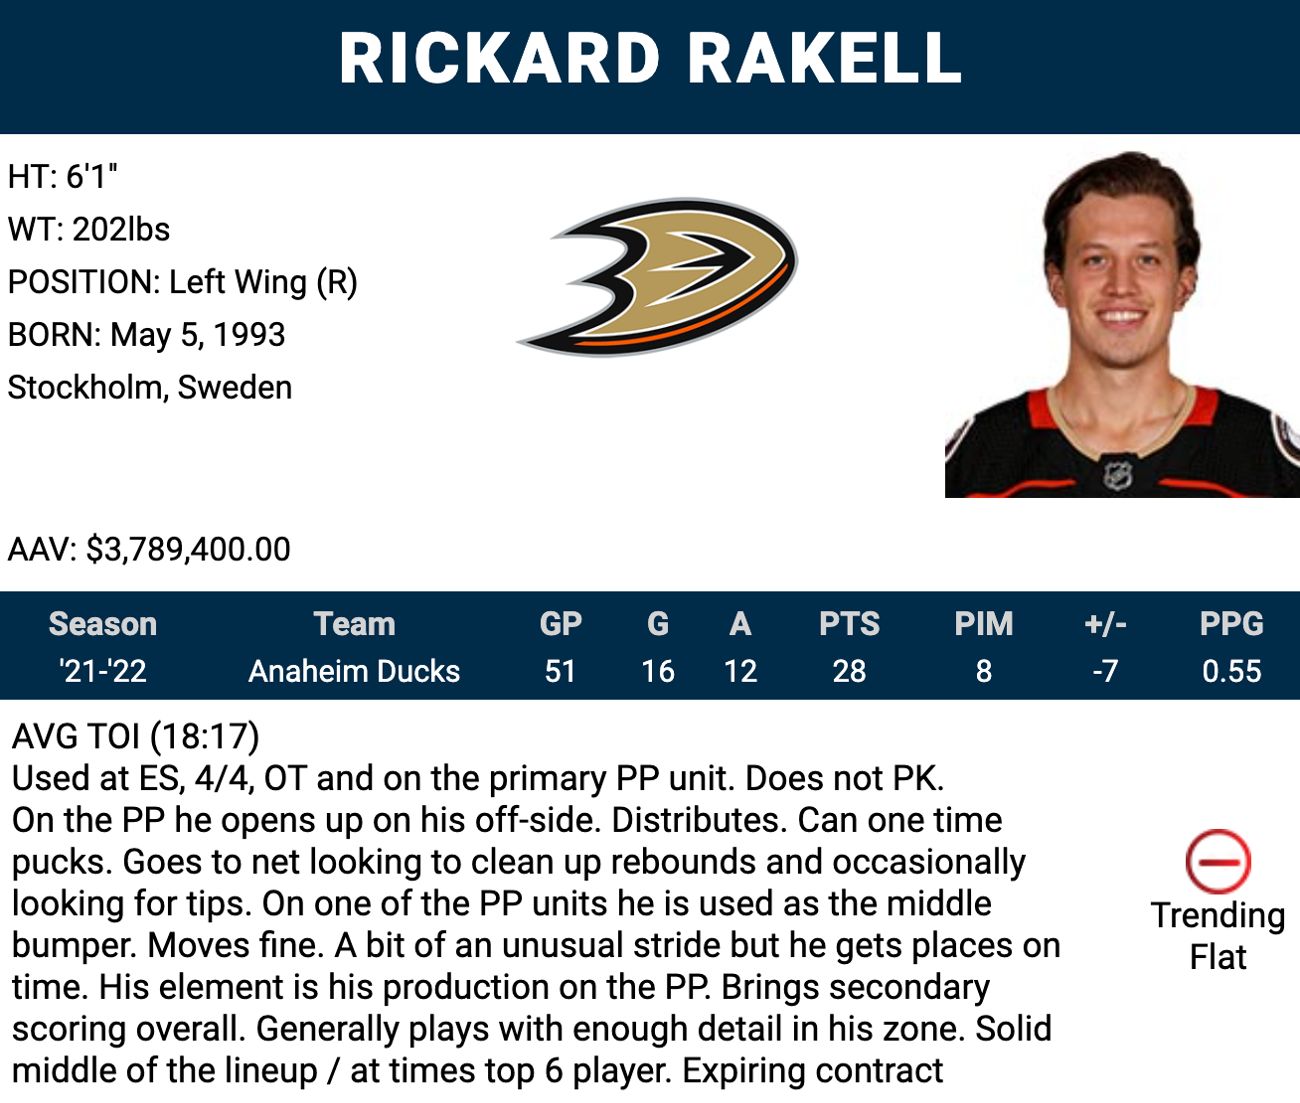 Player Q&A, Rickard Rakell